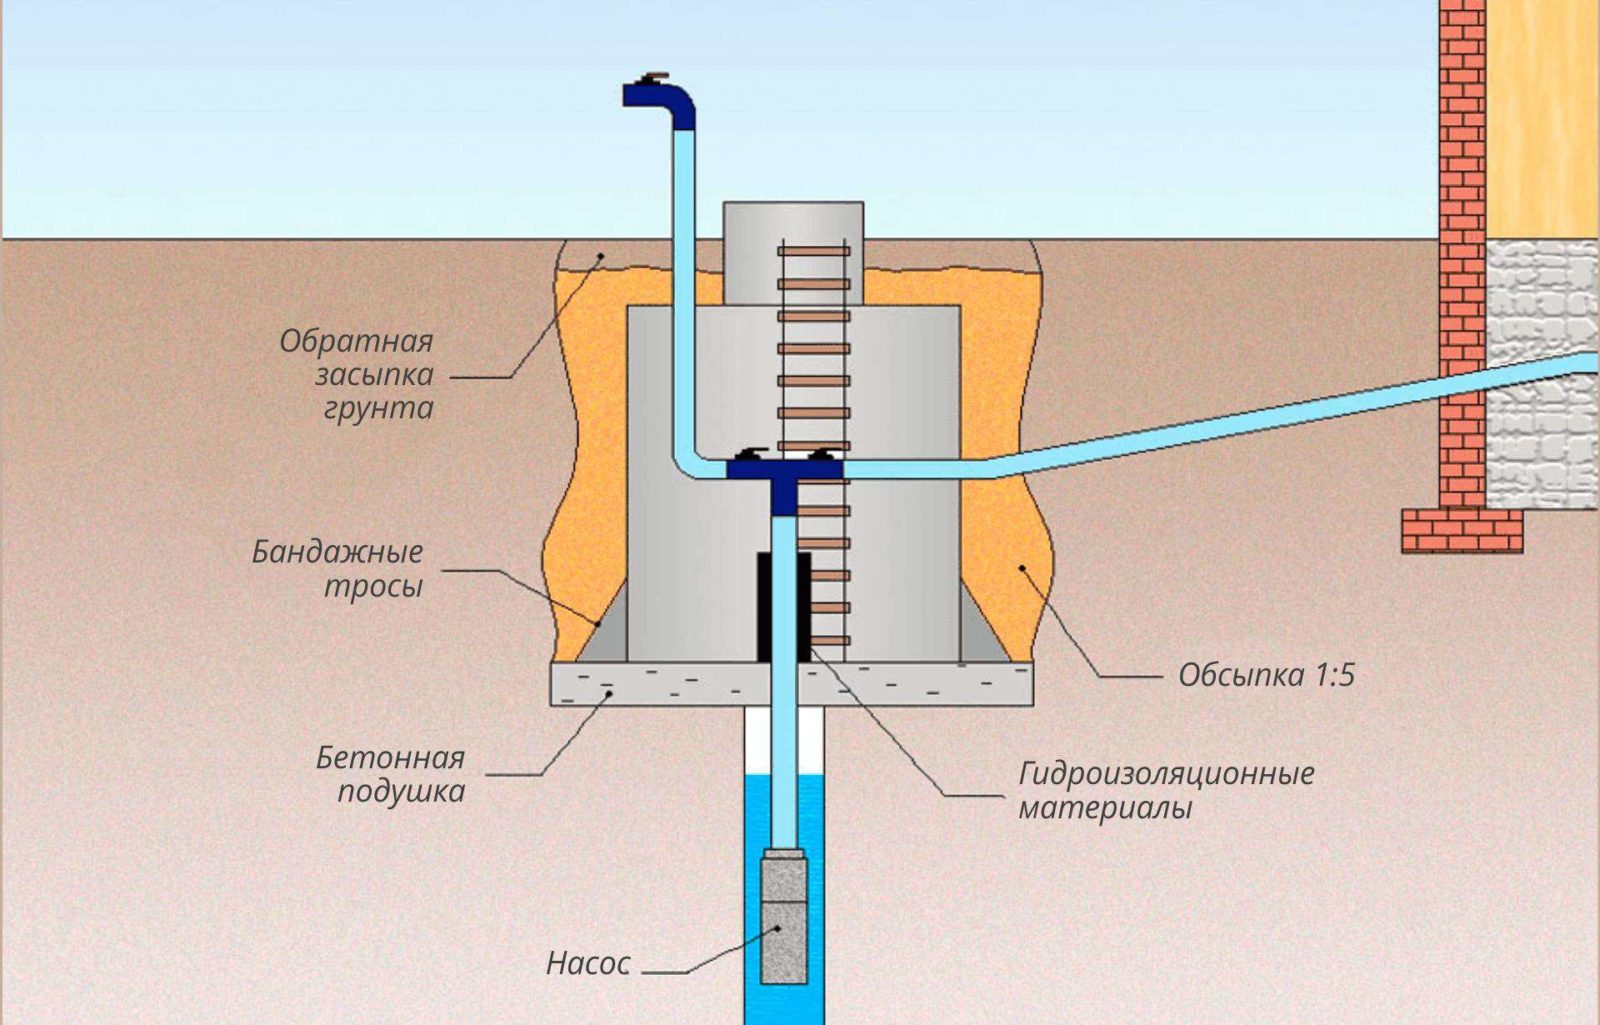 Обустройство скважины и монтаж оборудования под воду с кессоном